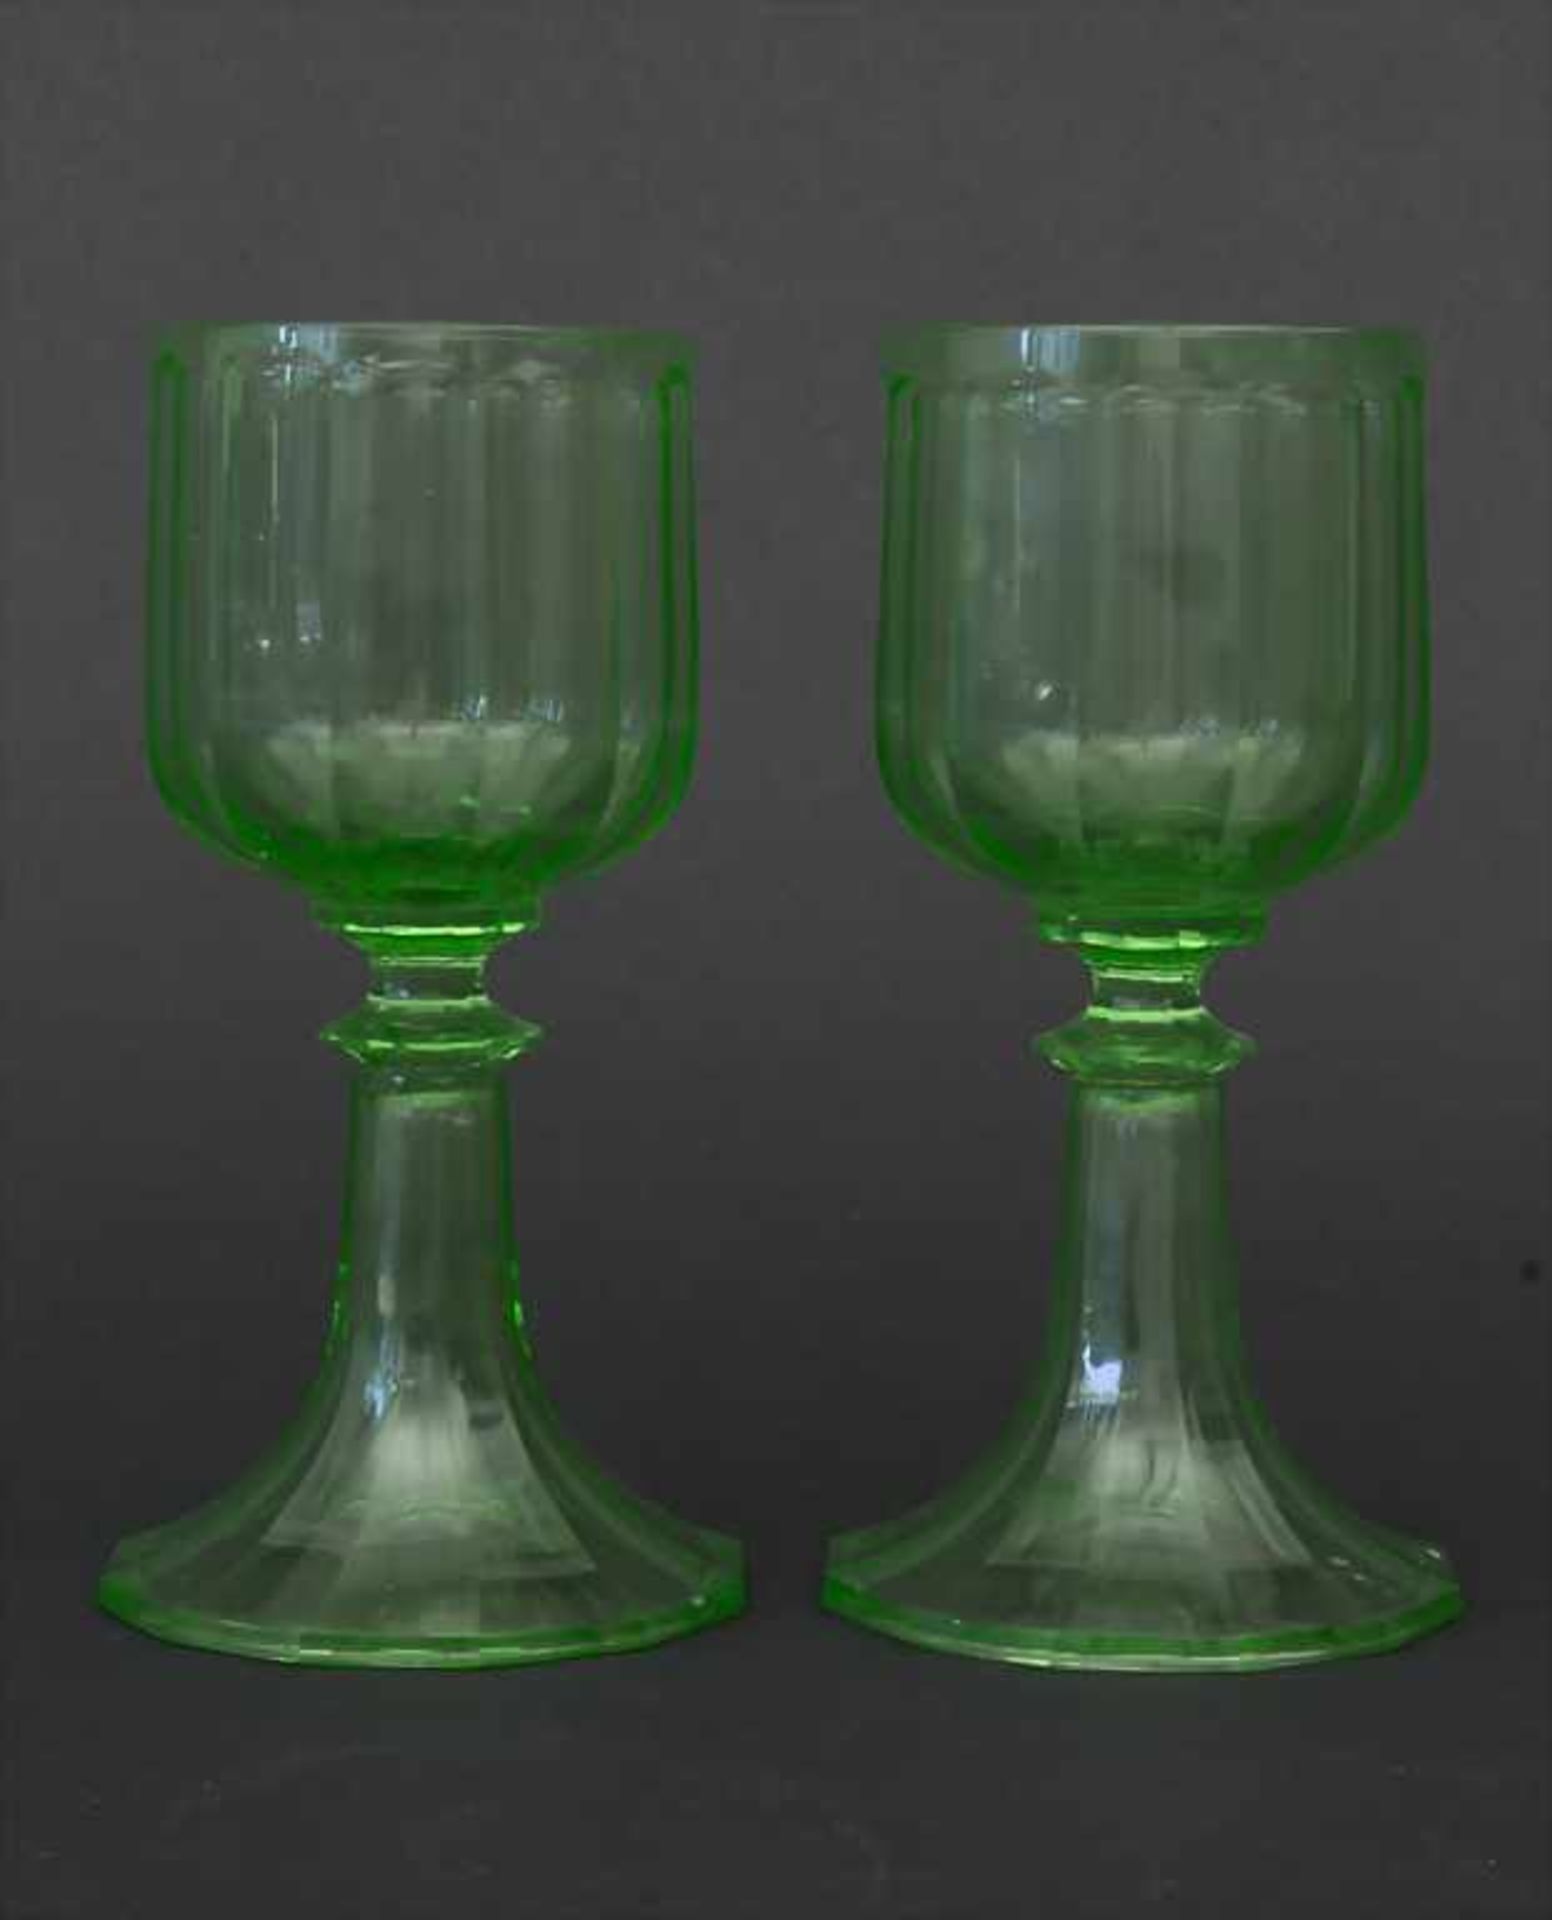 2 Urangläser / 2 uranium glasses, wohl J. & L. Lobmeyr, Wien, um 1880Material: grünes Uranglas mit